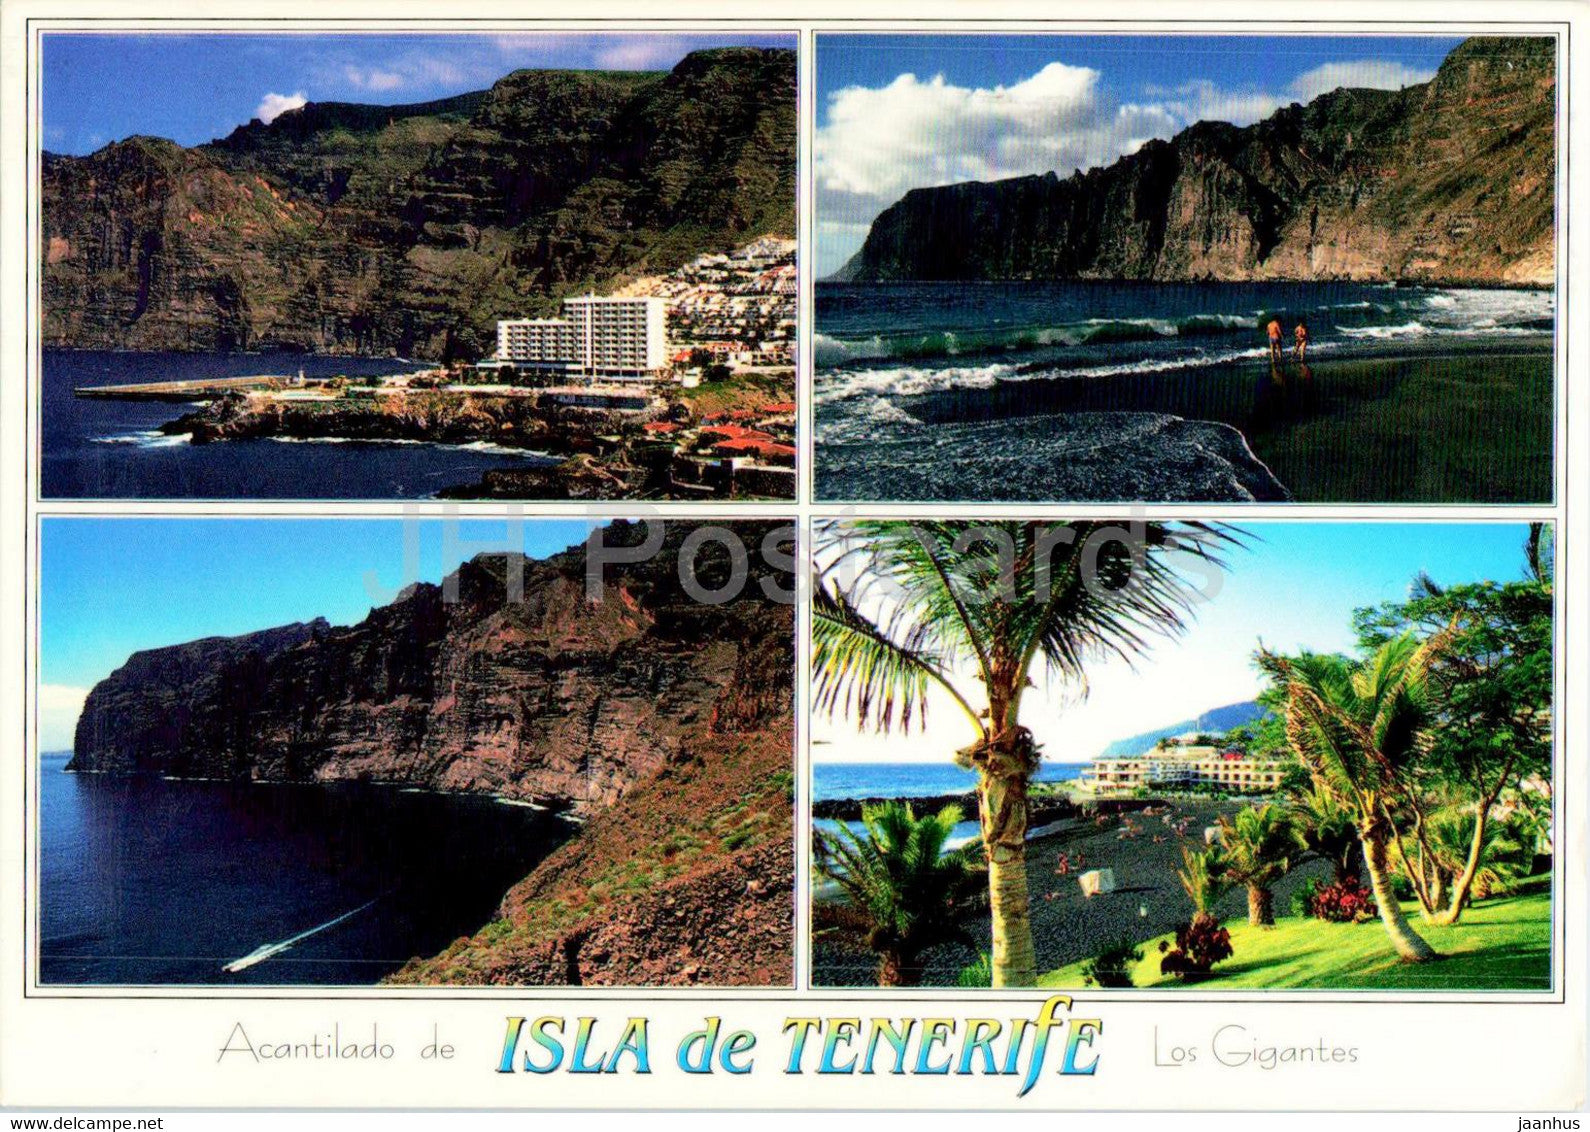 Isla de Tenerife - Acantilado de Los Gigantes - Playa de La Arena - 1996 - Spain - used - JH Postcards